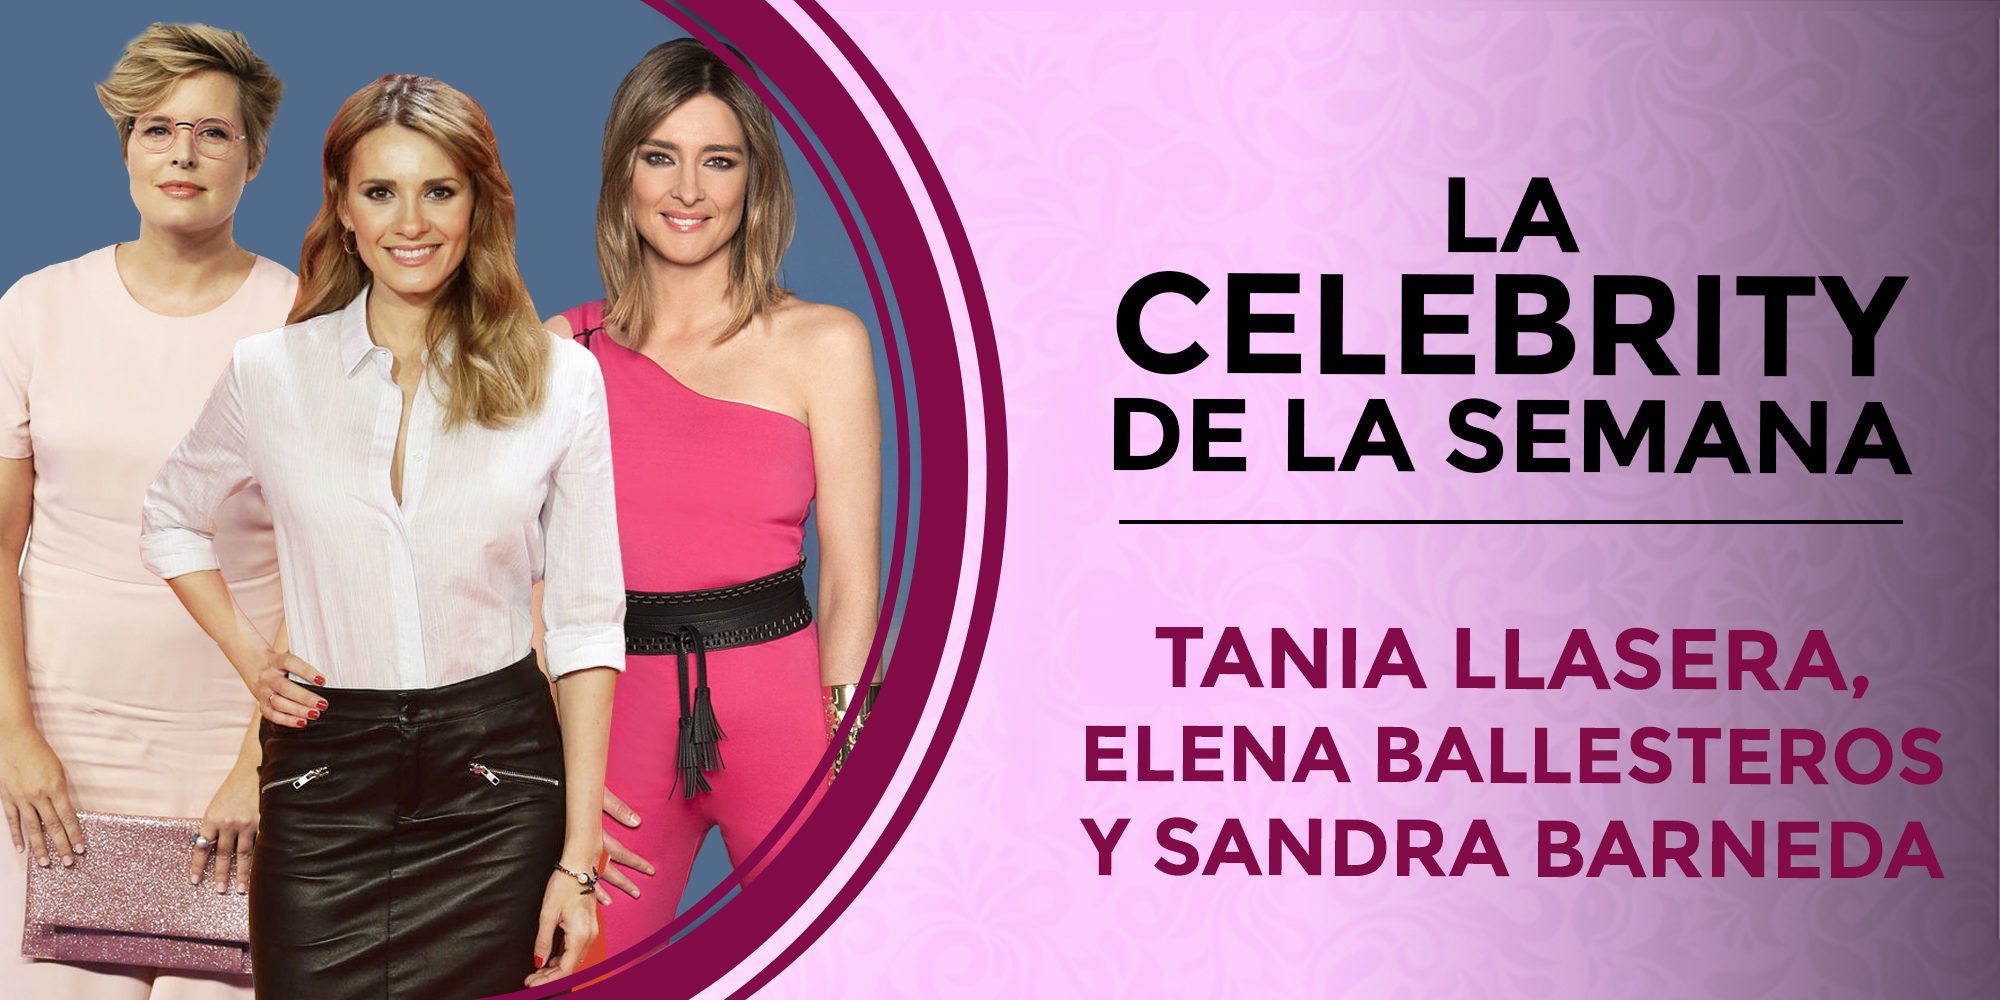 Elena Ballesteros, Sandra Barneda y Tania Llasera, las celebs de la semana por motivos muy distintos